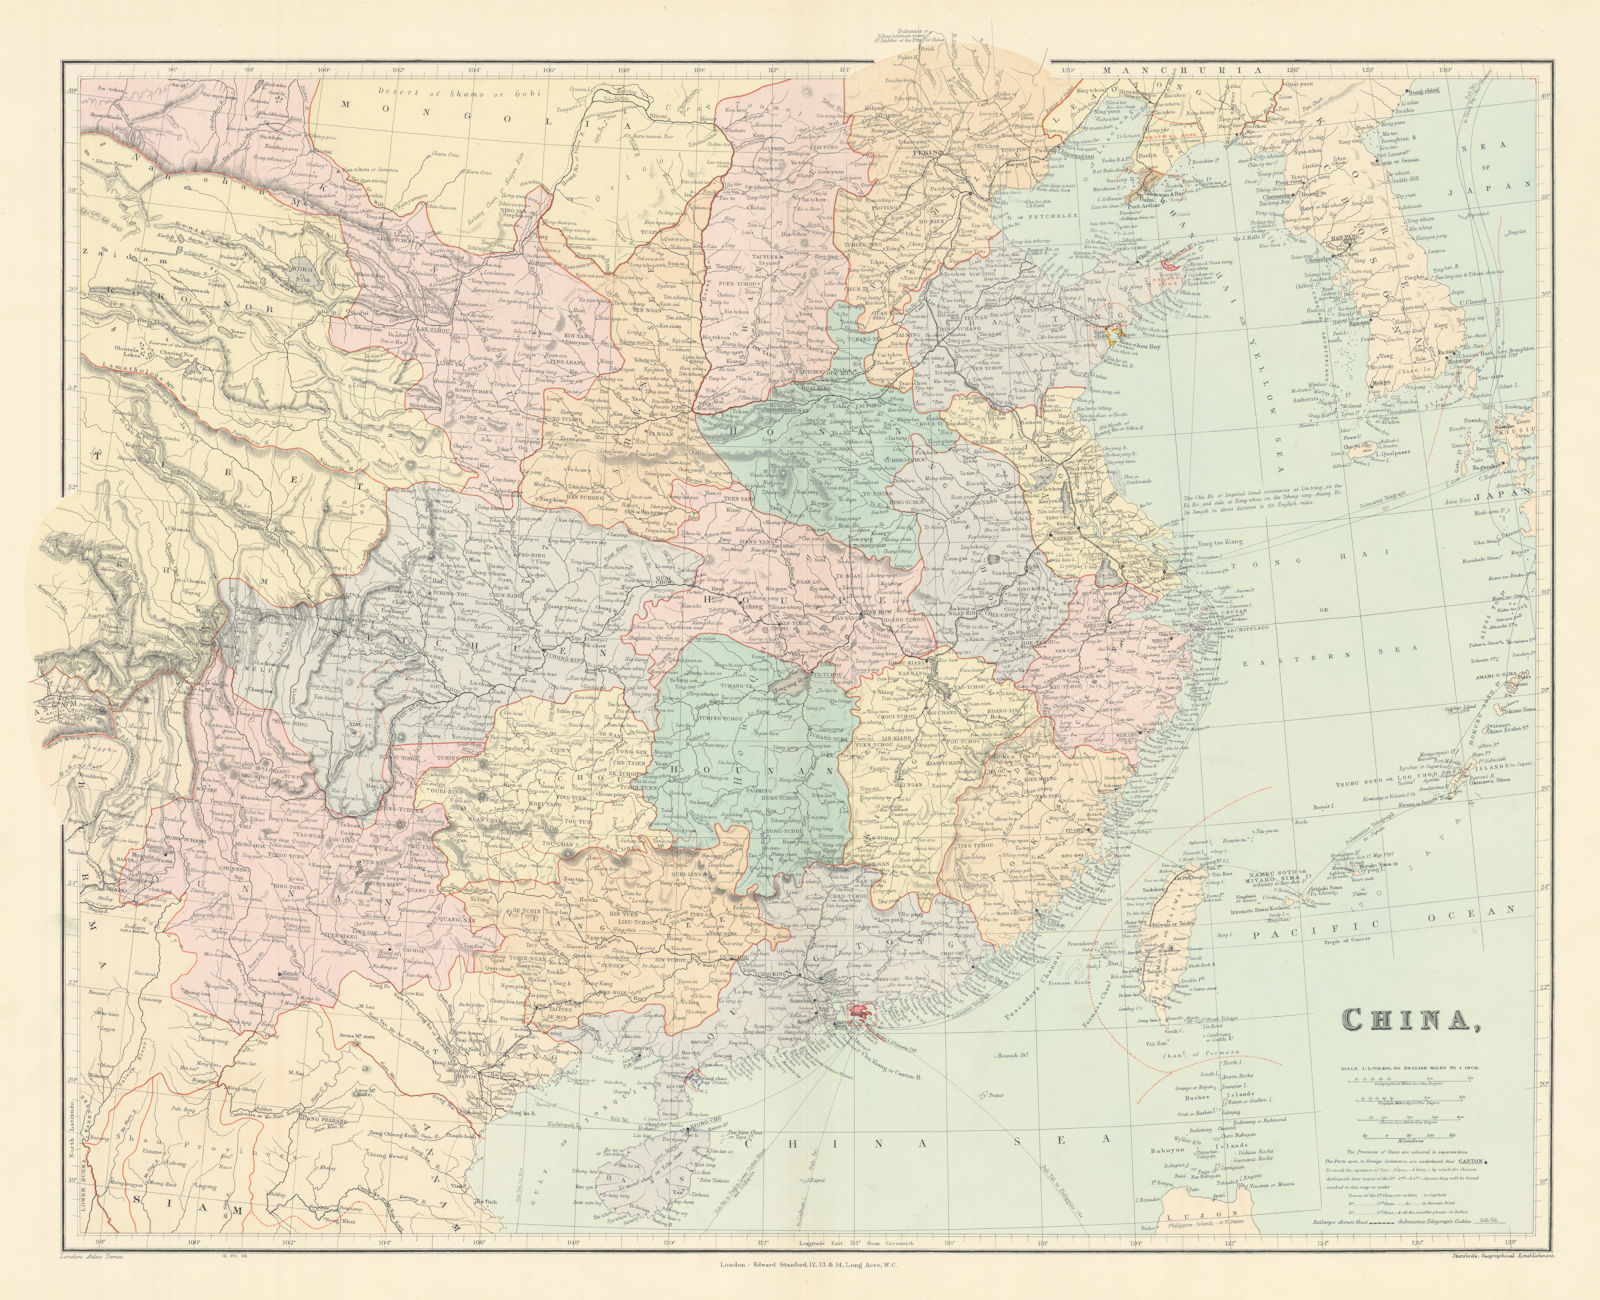 China. Hong Kong. Kwang-chao. Kiao-chai. Wei-hai-wei. 52x65cm. STANFORD 1904 map